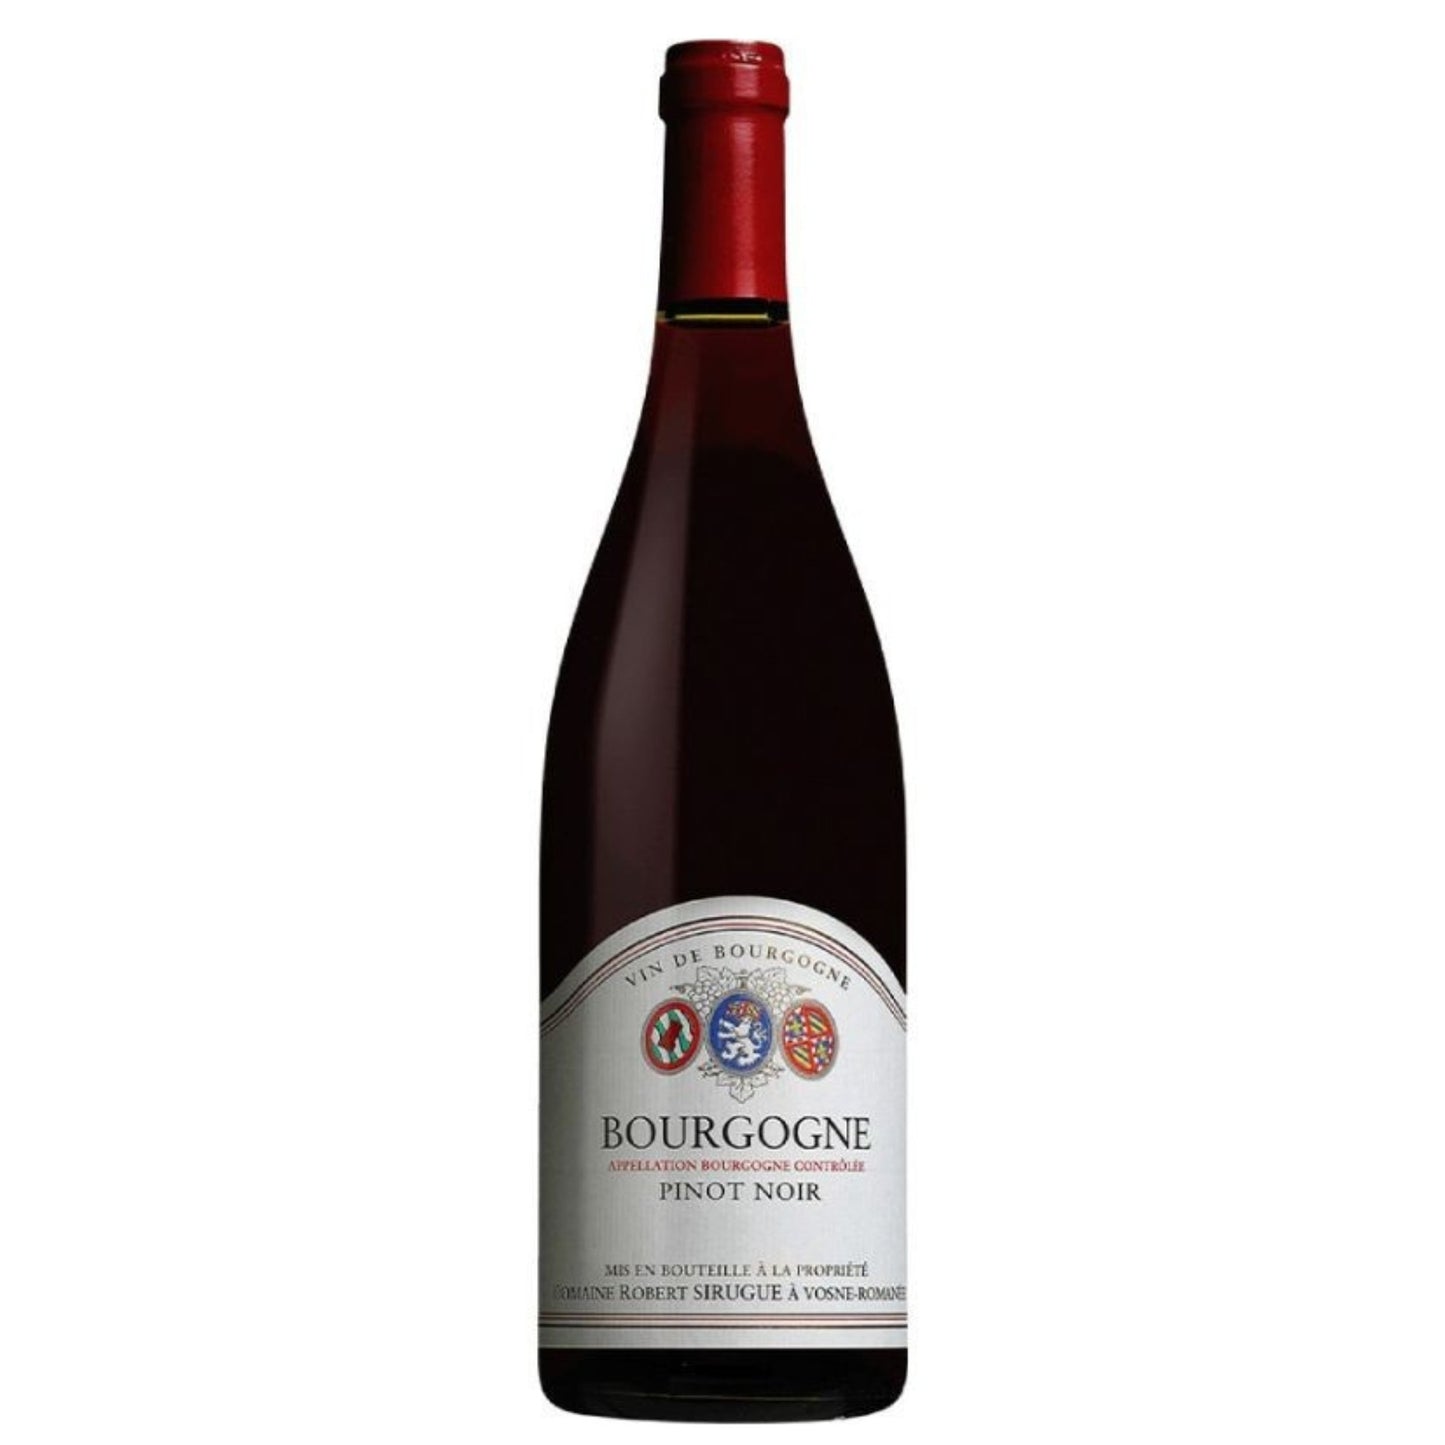 Robert Sirugue Bourgogne Pinot Noir - Grand Vin Pte Ltd